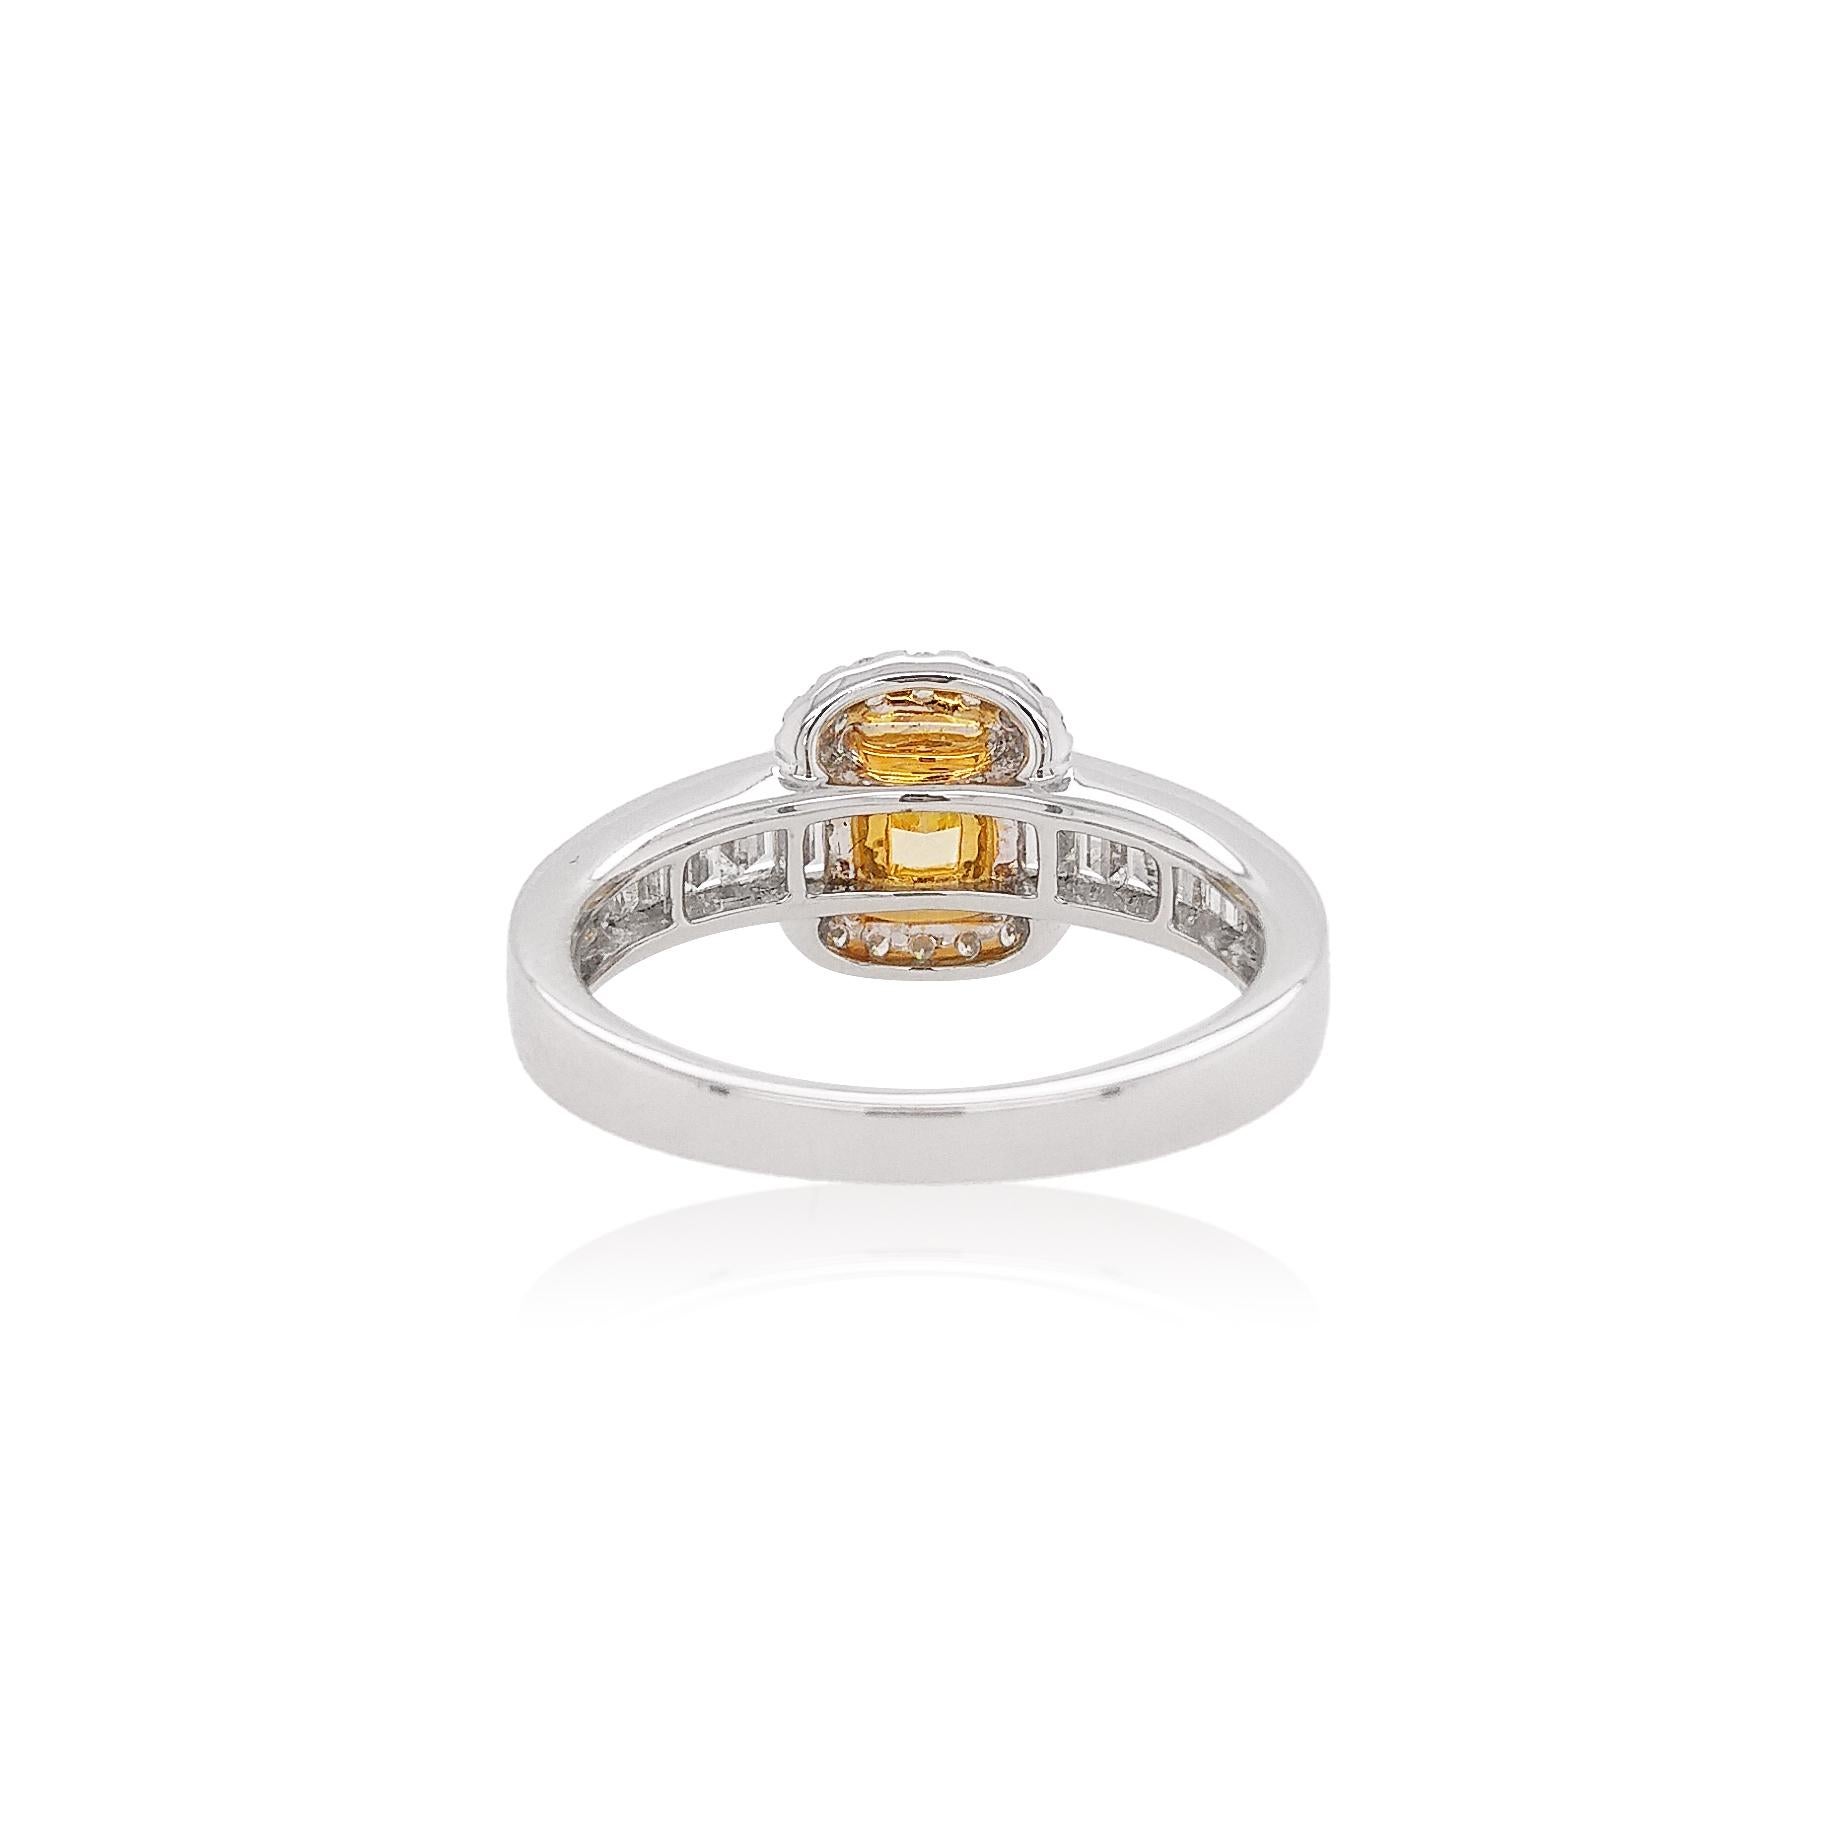 Este delicado anillo presenta un lustroso Diamante Amarillo Intenso Fancy en el centro de su diseño. Los espectaculares matices del Diamante Amarillo están perfectamente acentuados por el engaste de Platino y Oro Amarillo de 18 quilates, y los